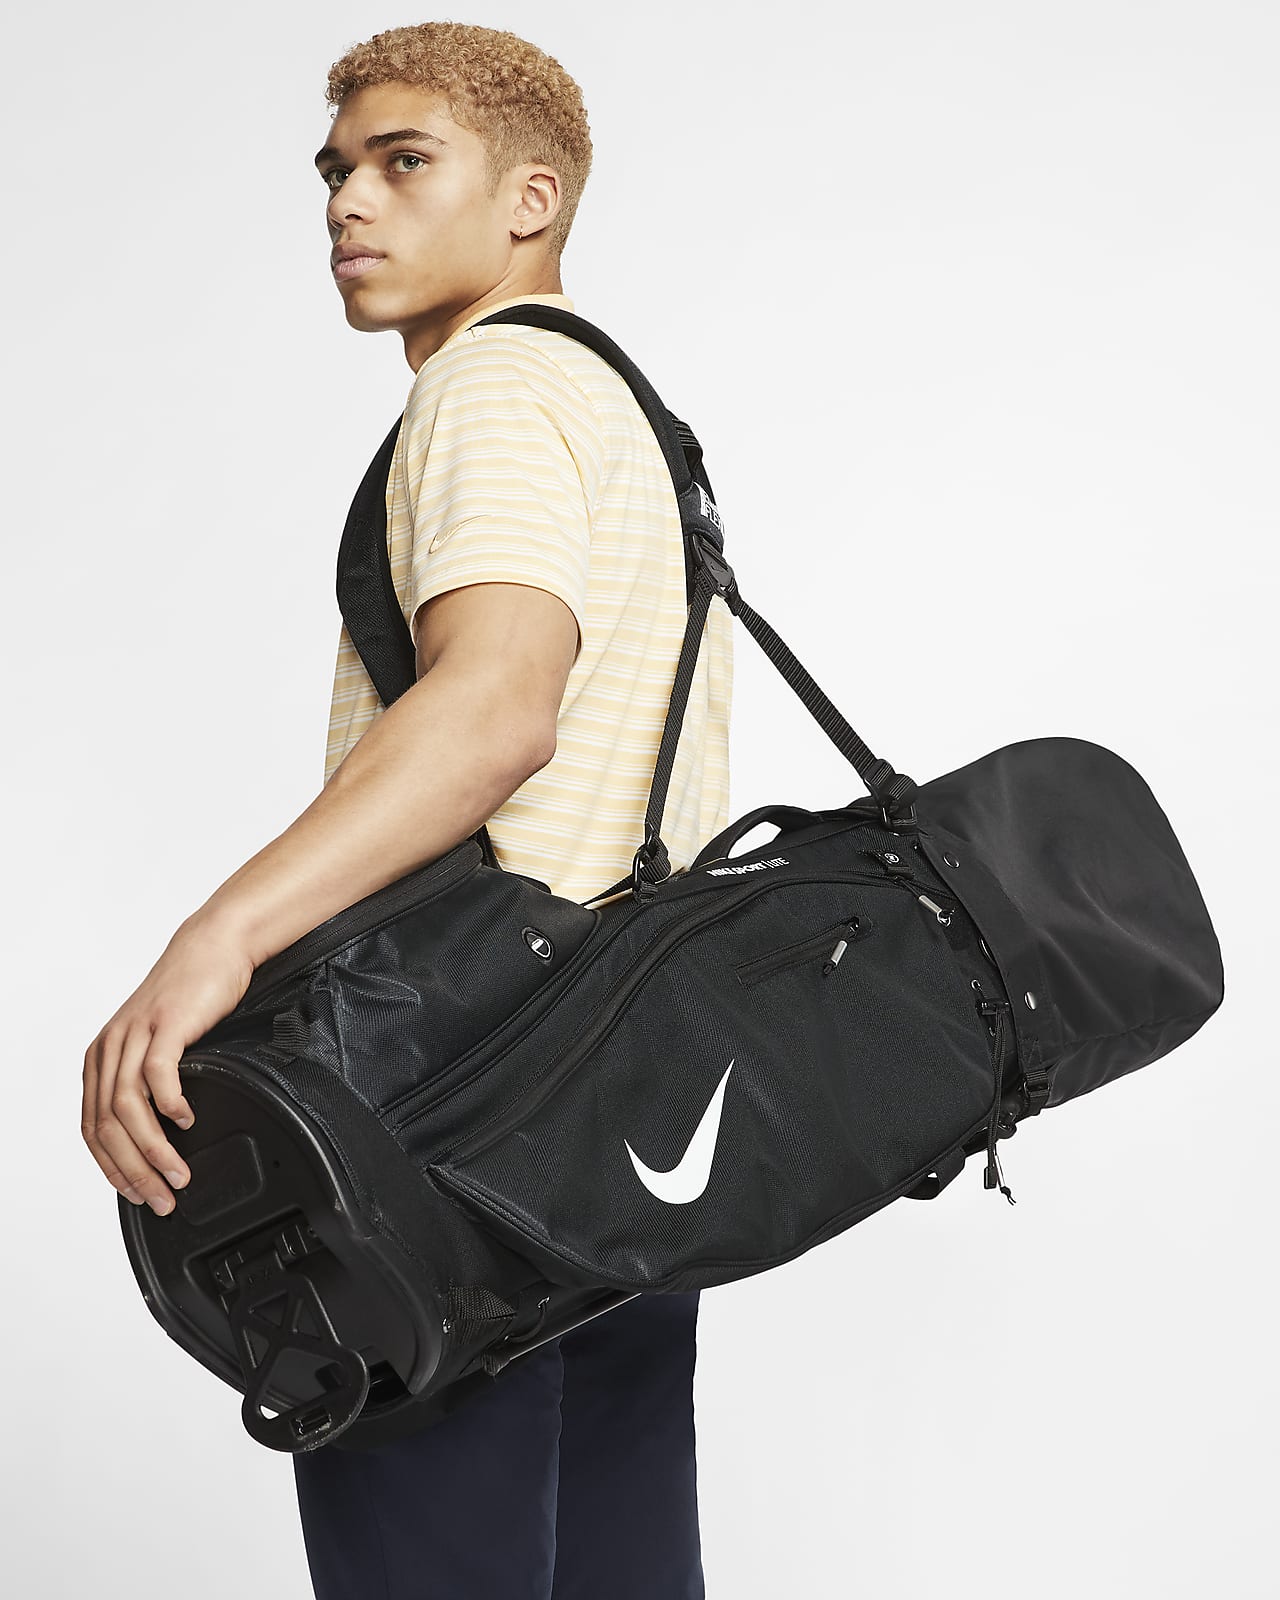 Voorbeeld hout Pat Nike Sport Lite Golf Bag. Nike UK